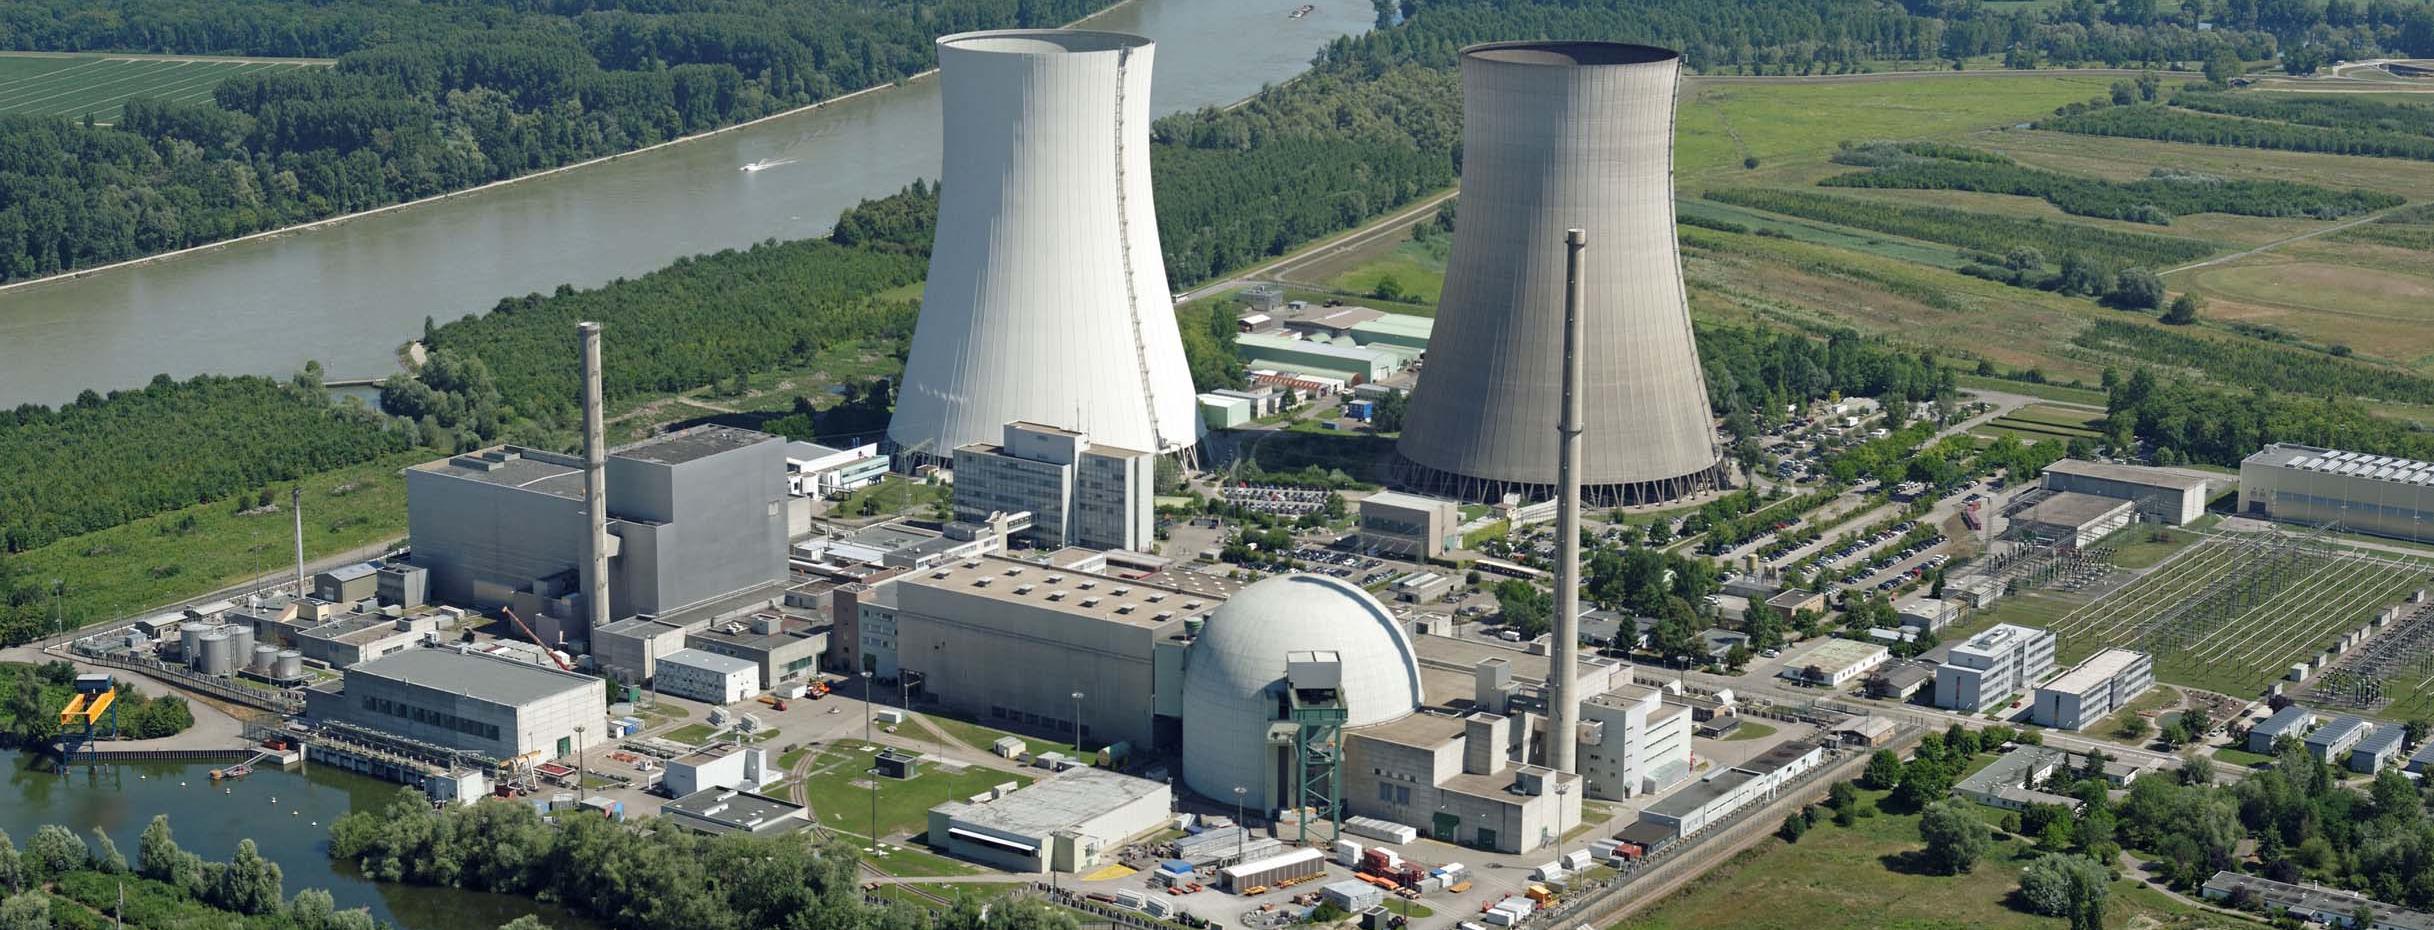 Luftbild des Kernkraftwerks Philippsburg